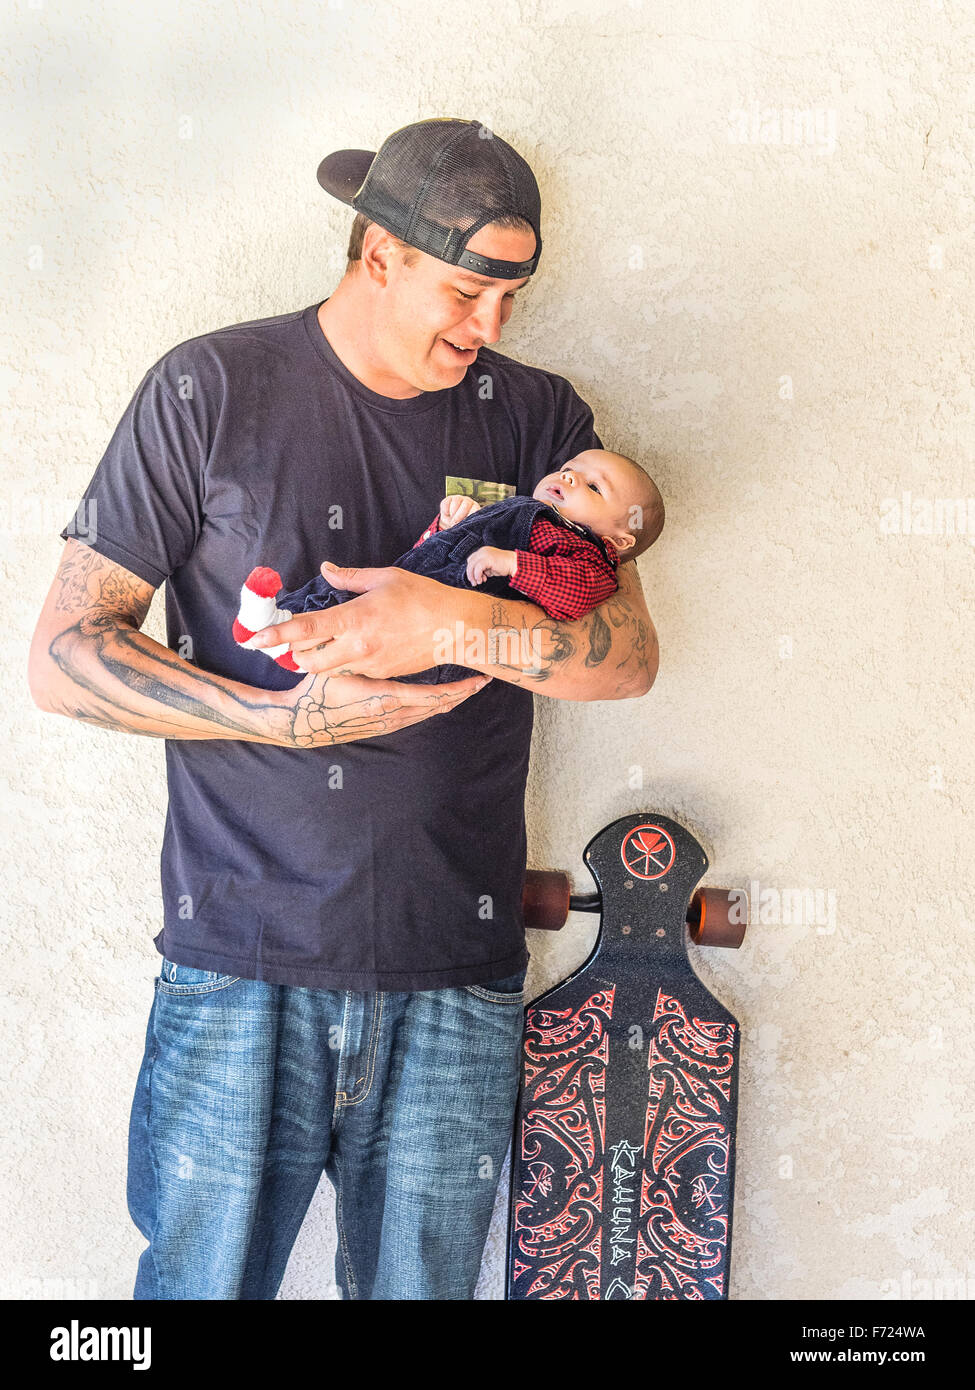 Per la corsa su skateboard padre millenario con tatuaggi tenendo la sua 2 ½ mese baby figlio e in piedi accanto al papà della skateboard. Foto Stock